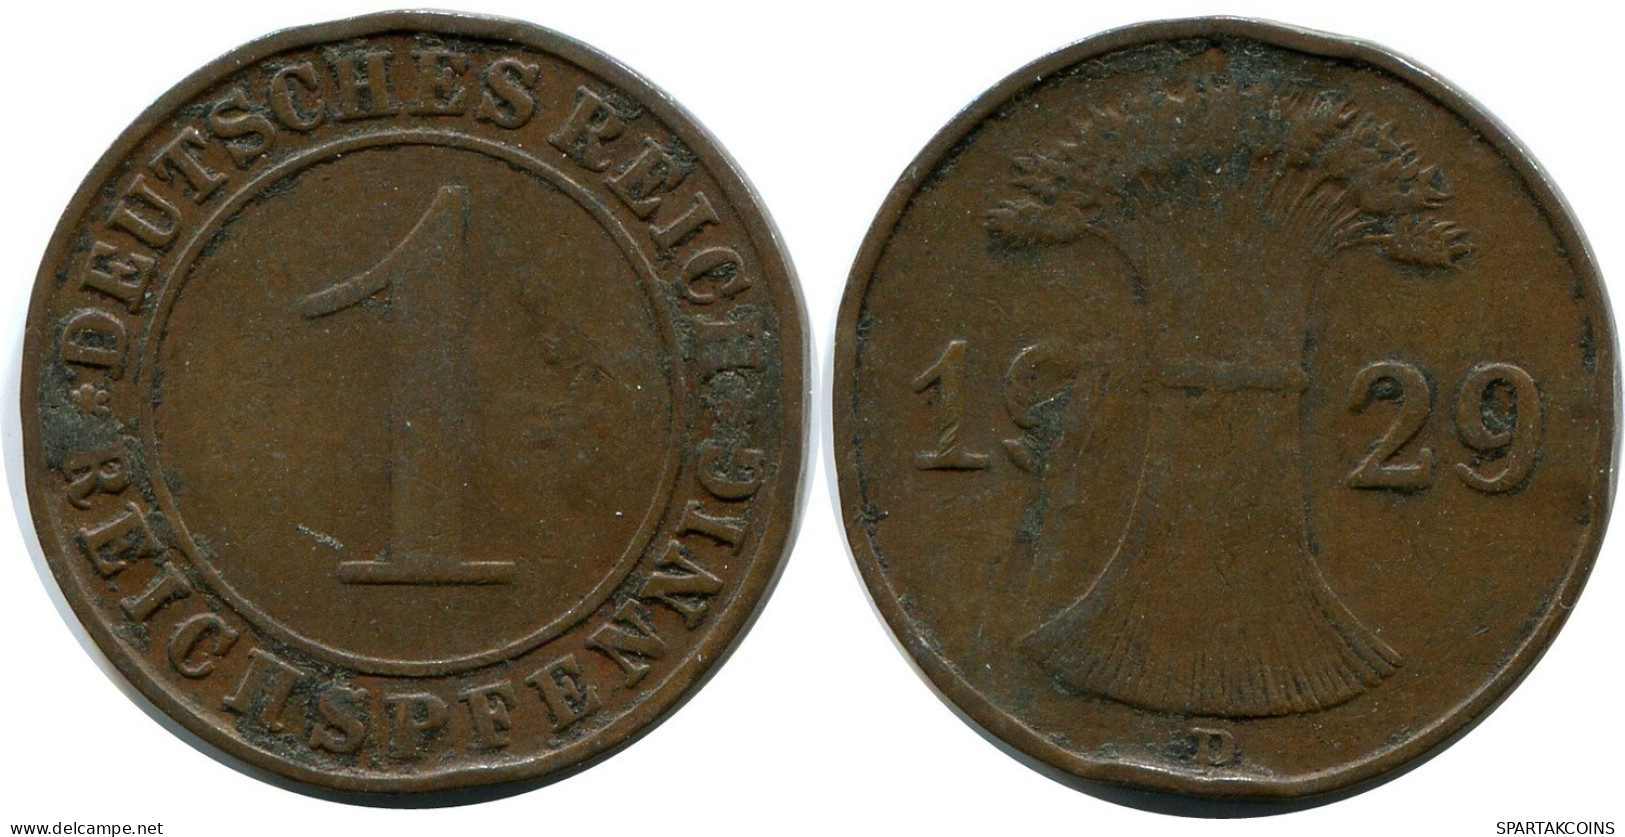 1 REICHSPFENNIG 1929 D ALEMANIA Moneda GERMANY #DB784.E.A - 1 Rentenpfennig & 1 Reichspfennig